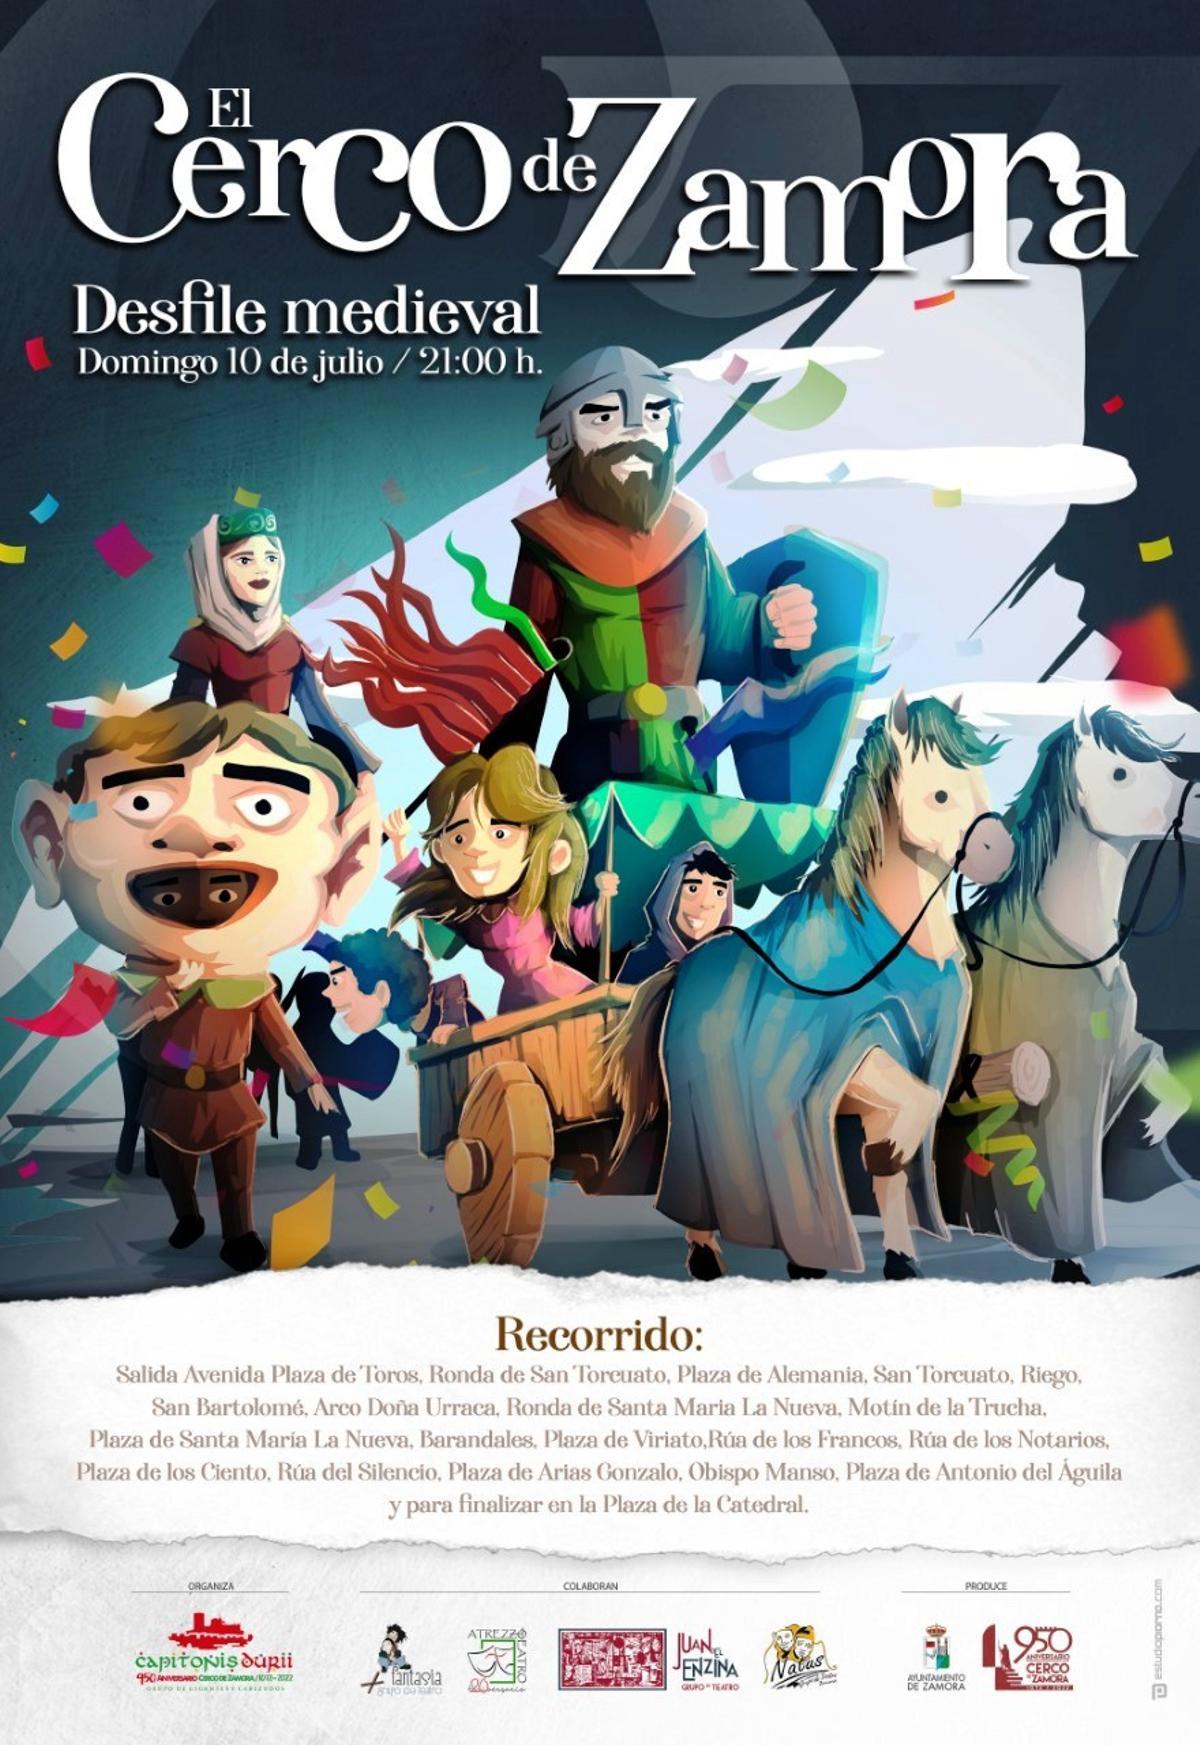 Cartel promocional del desfile medieval de Capitonis Durii que recorrerá Zamora.